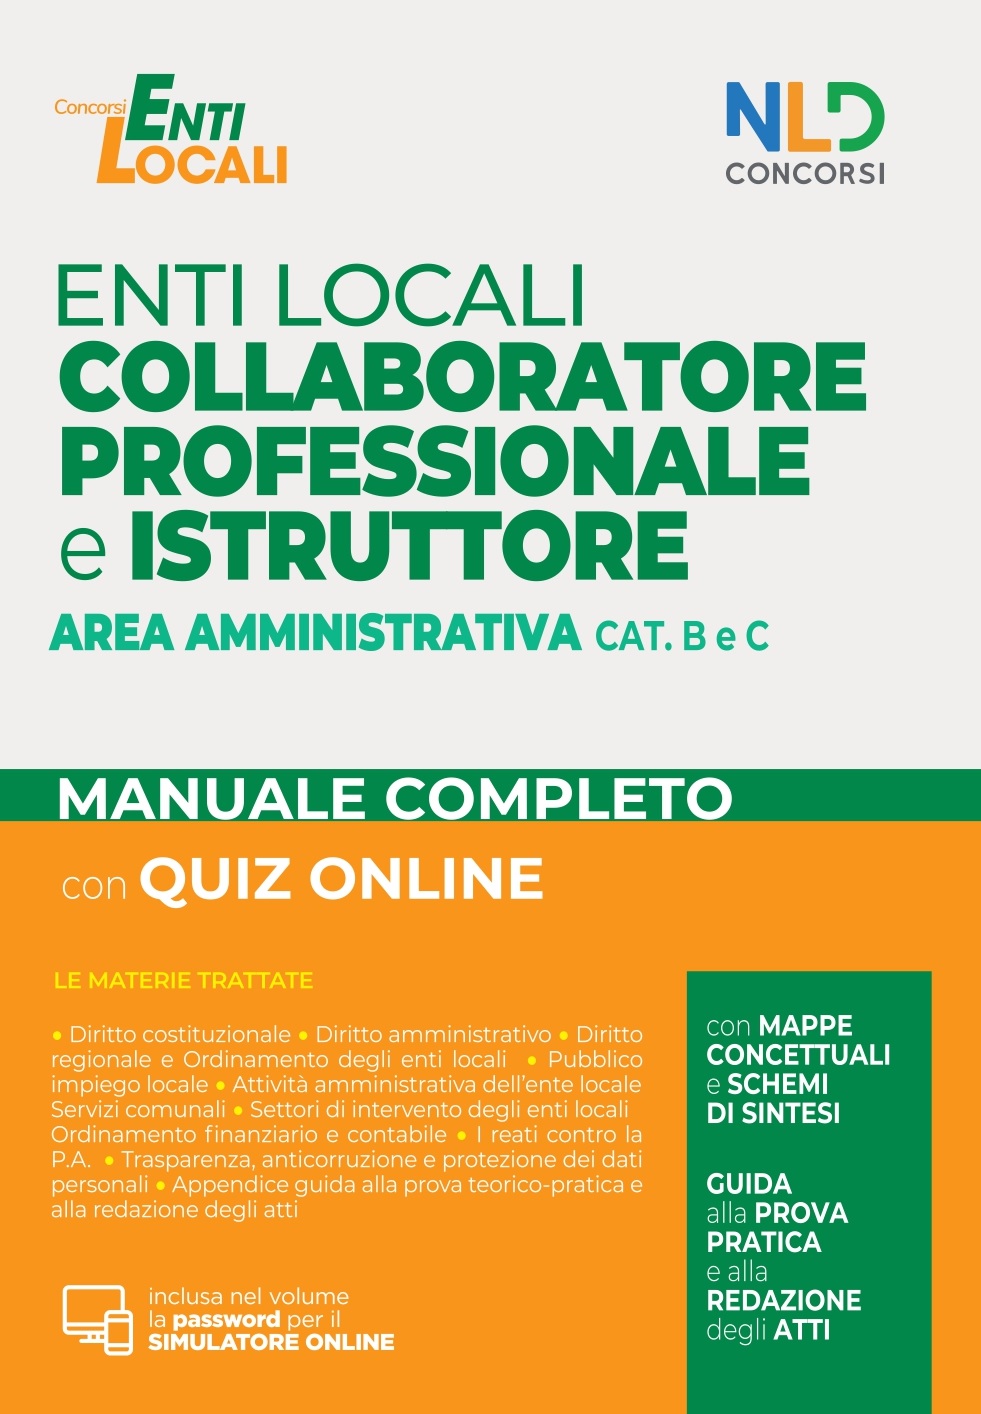 Collaboratore e Istruttore dellâ€™area amministrativa cat. B e C negli Enti Locali 2022 - Manuale + Quiz (2)